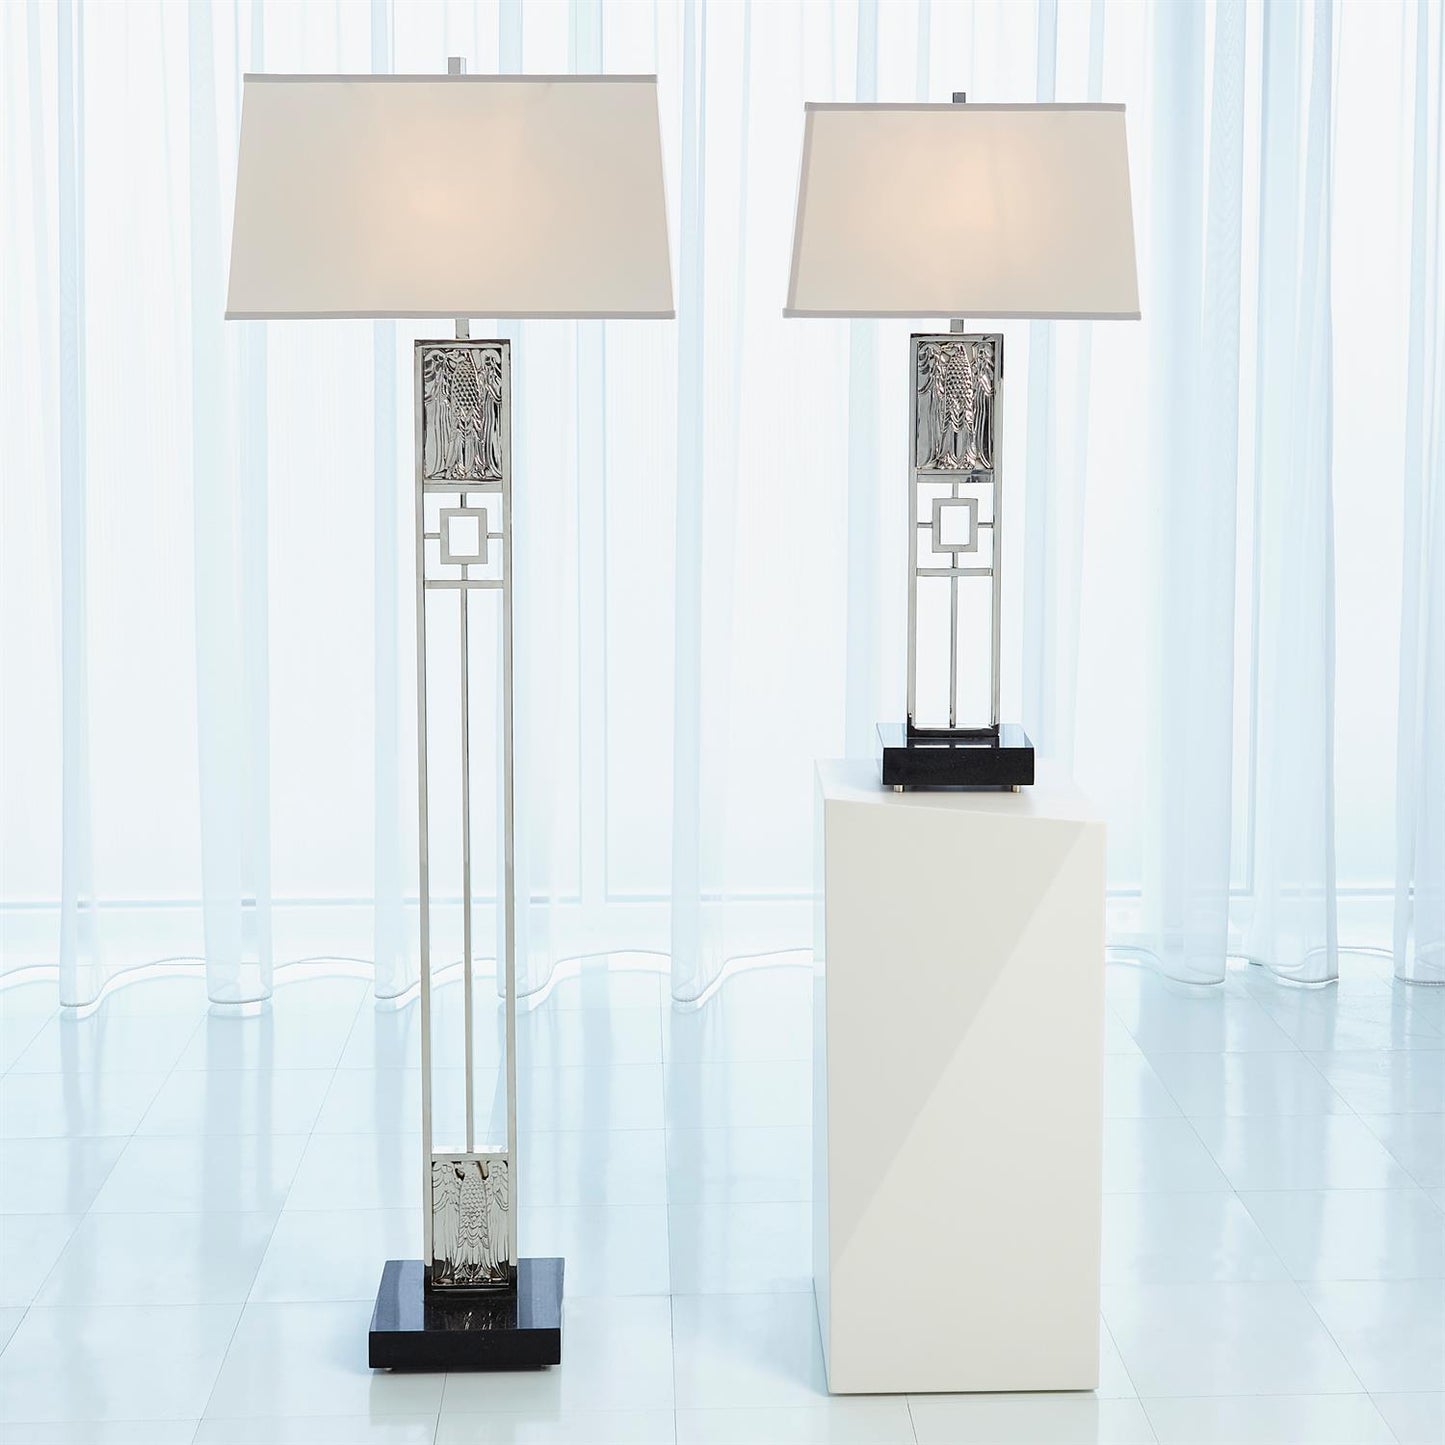 Republic Floor Lamp - Nickel - Grats Decor Interior Design & Build Inc.